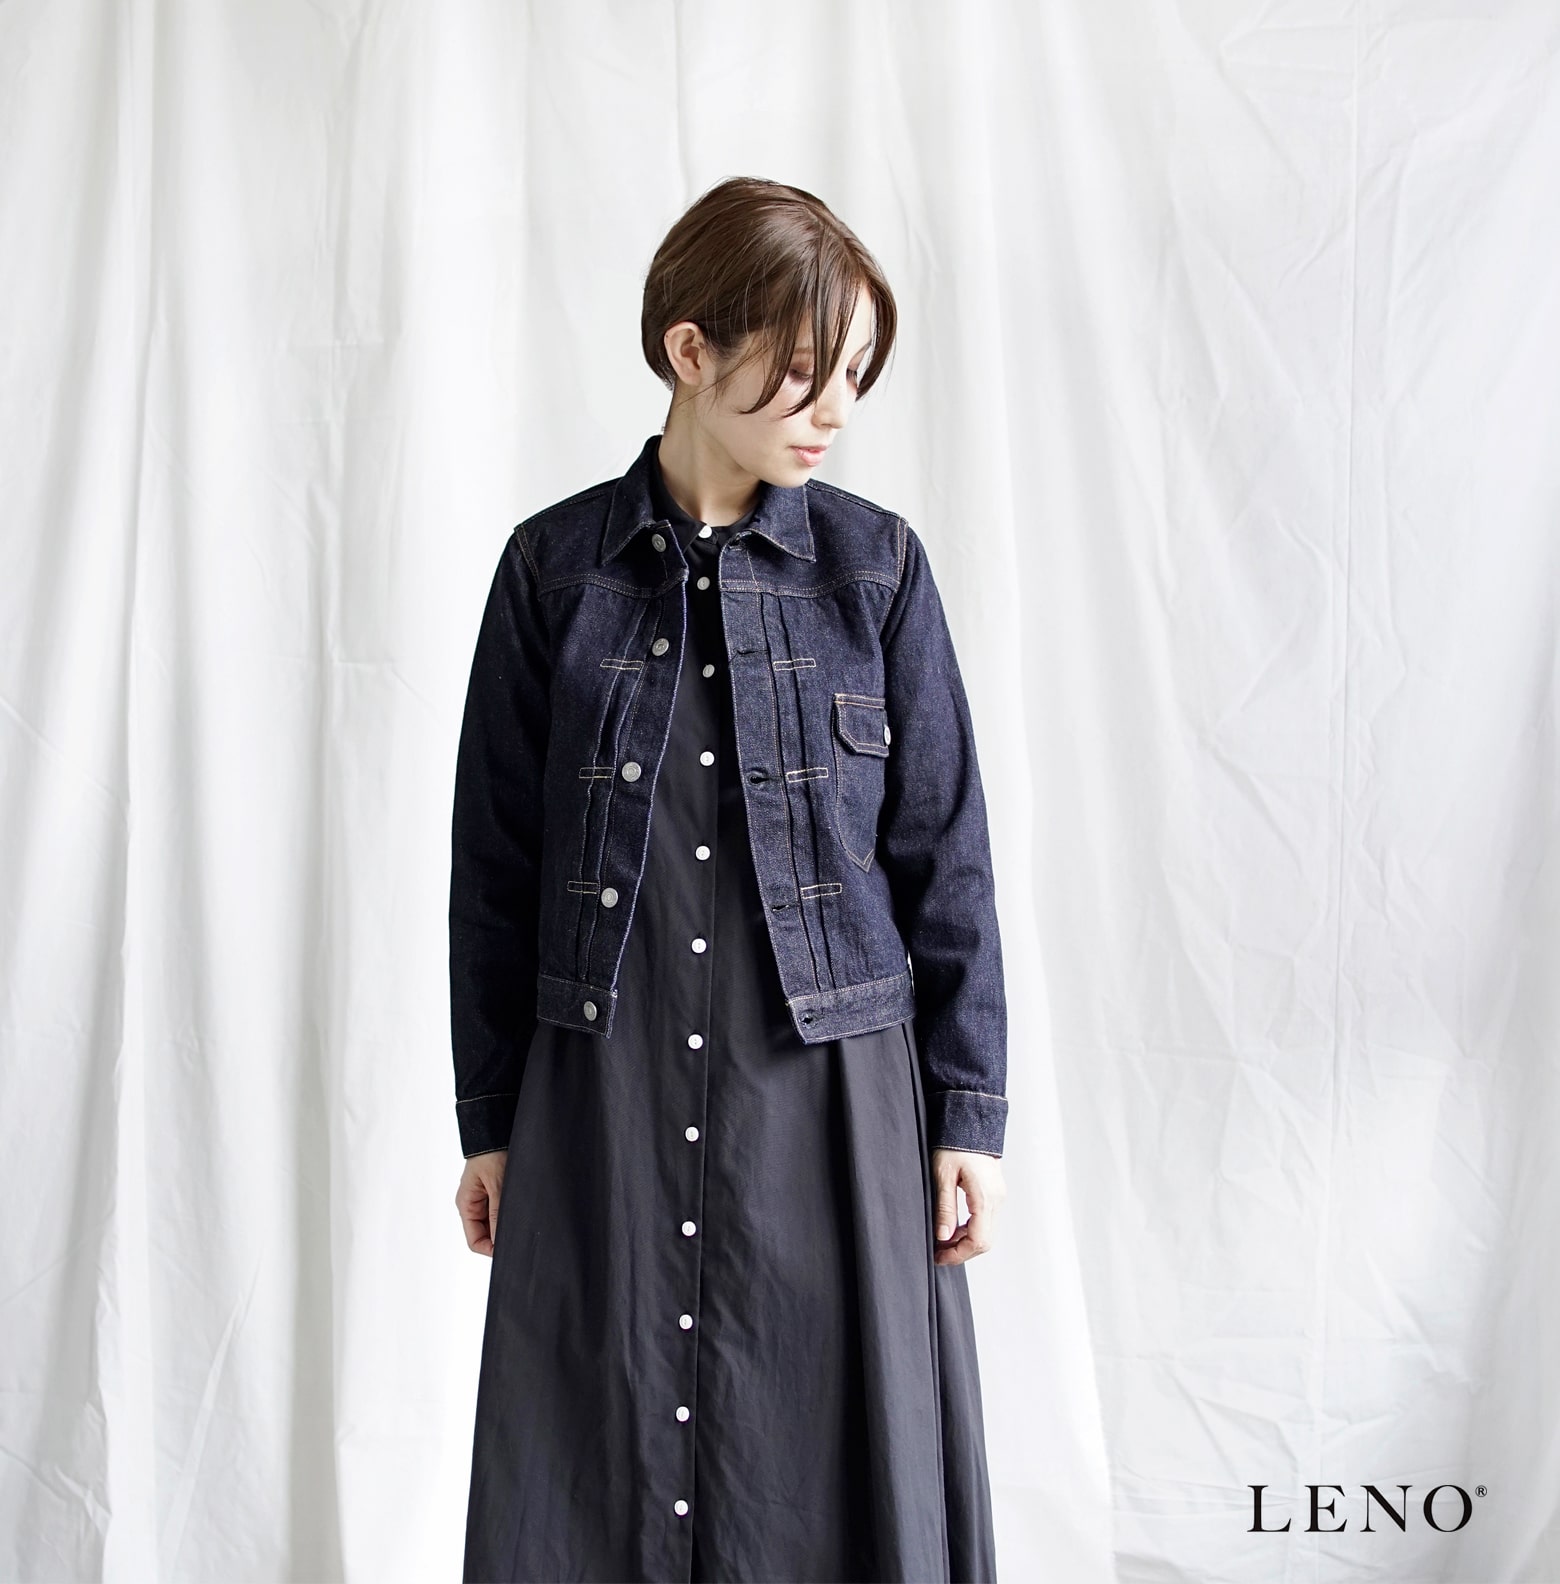 Leno リノ 1stタイプデニムジャケット Brenda L02 Jj001 サイズ カラー交換初回無料 Iroma Aranciato